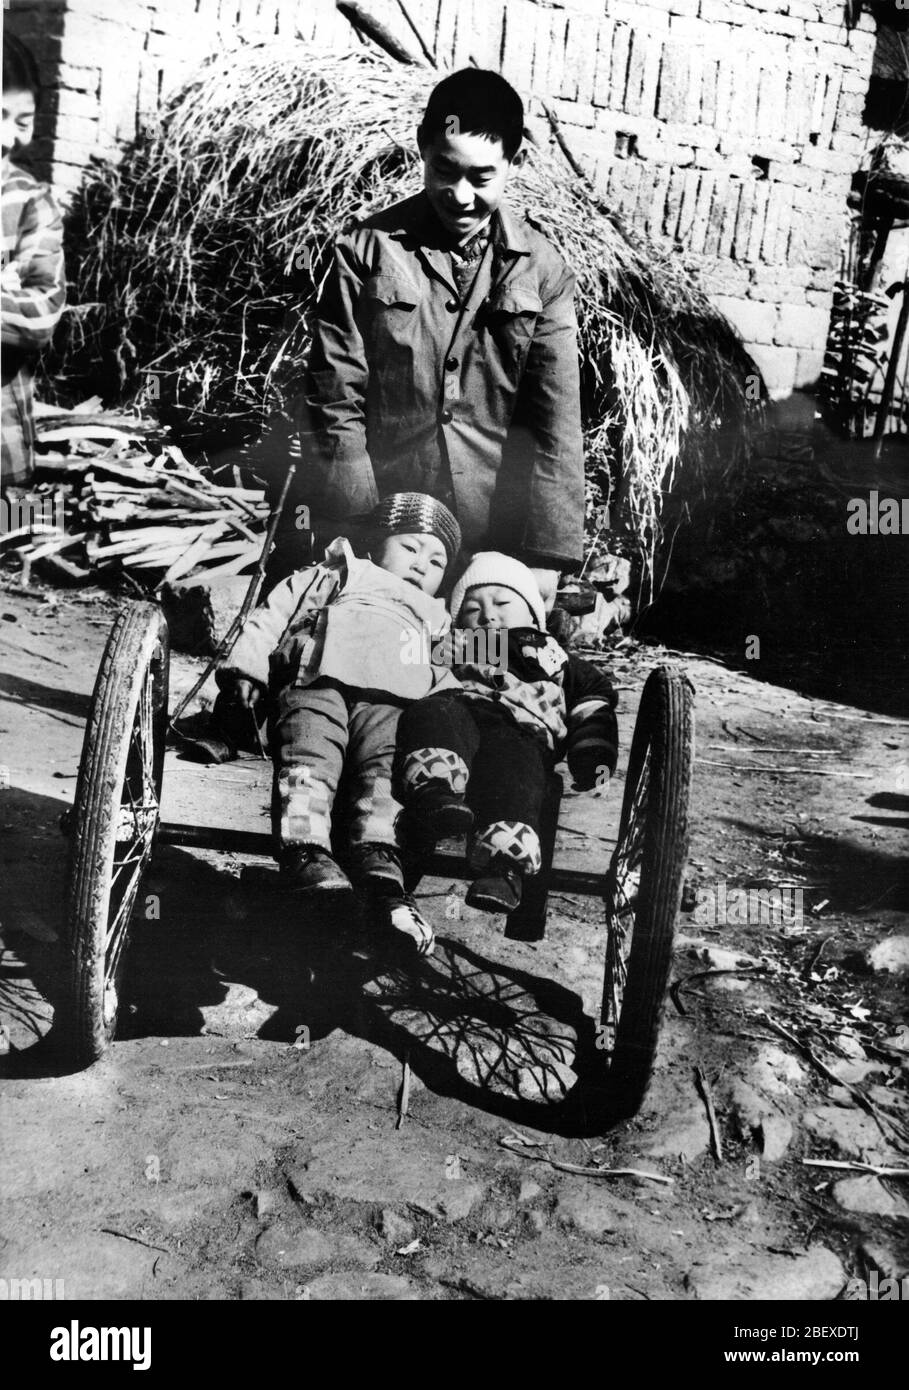 April 1993 Lushan County Henan kleiner Wagen die Kindheit der Kinder in den Bergen so eine Kinderwagen-Kindheit auf einem Regalrad Stockfoto